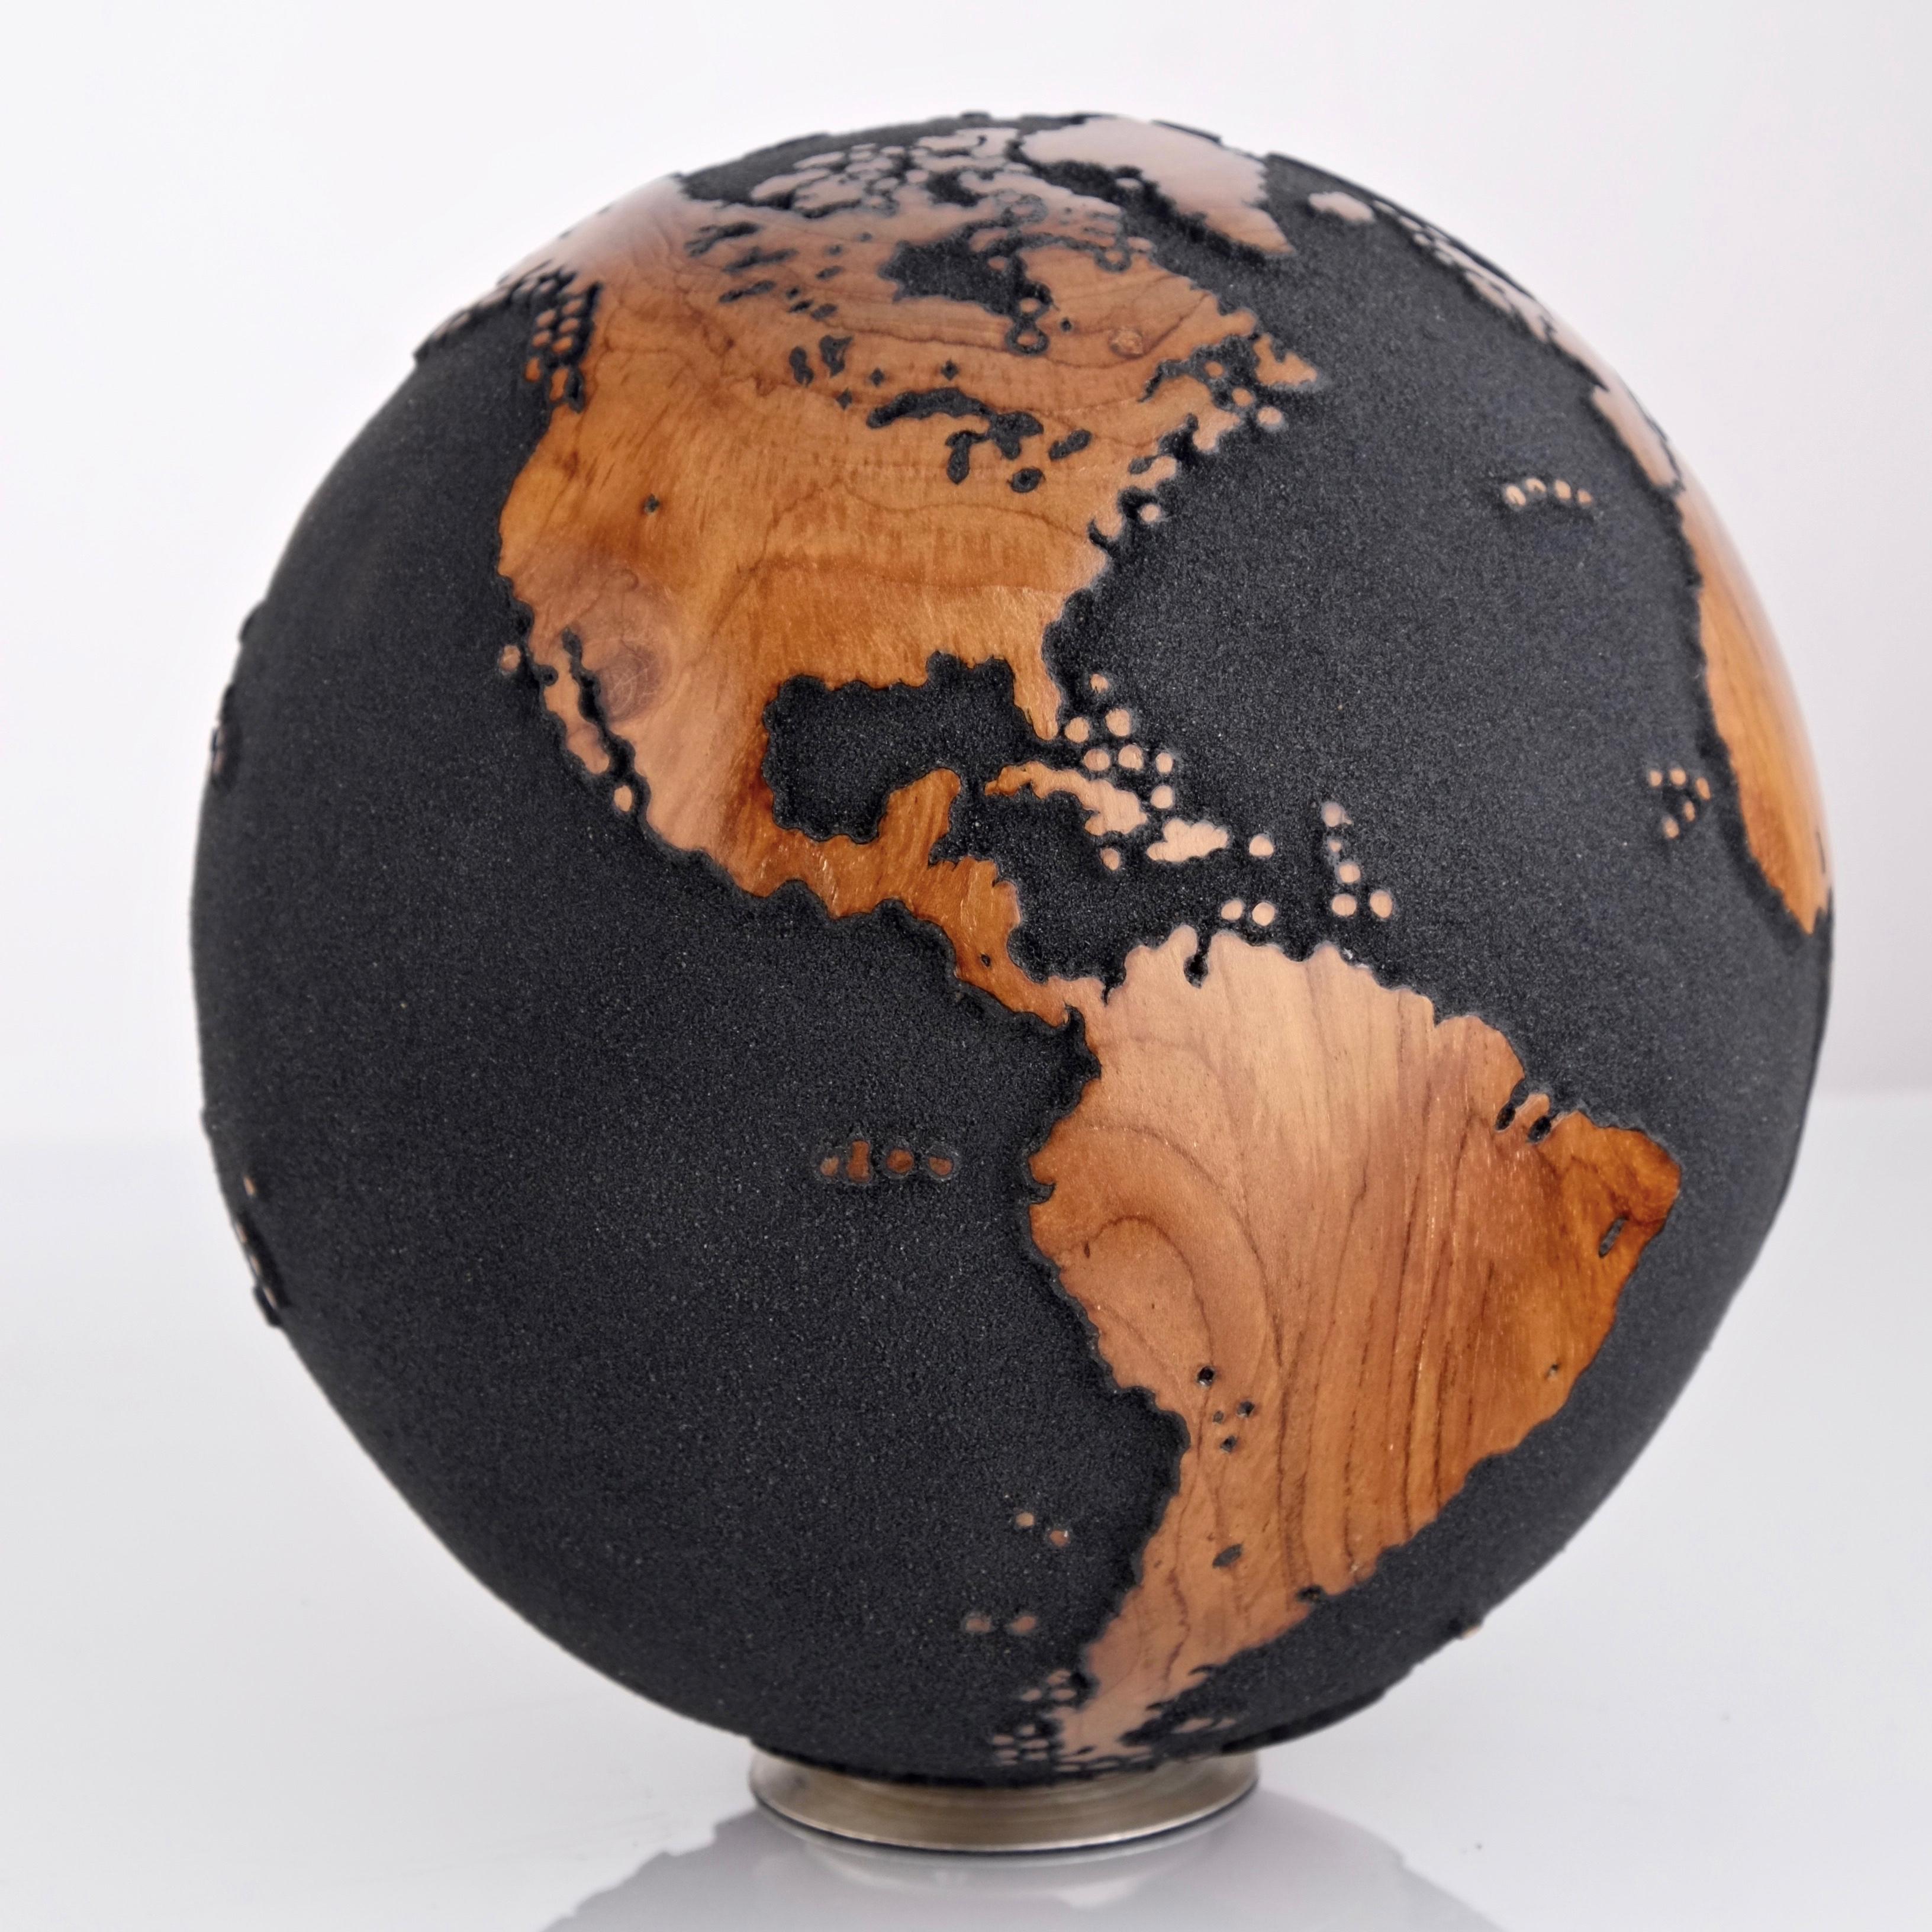 Teakholz und schwarzer Lavasand machen diesen schönen drehbaren Globus zu einer wirklich beeindruckenden Skulptur.
Die Form der Skulptur, die aus einem ganzen Stück Holz besteht, wird durch das Wachstum des Baumes bestimmt.
Auf einem drehbaren